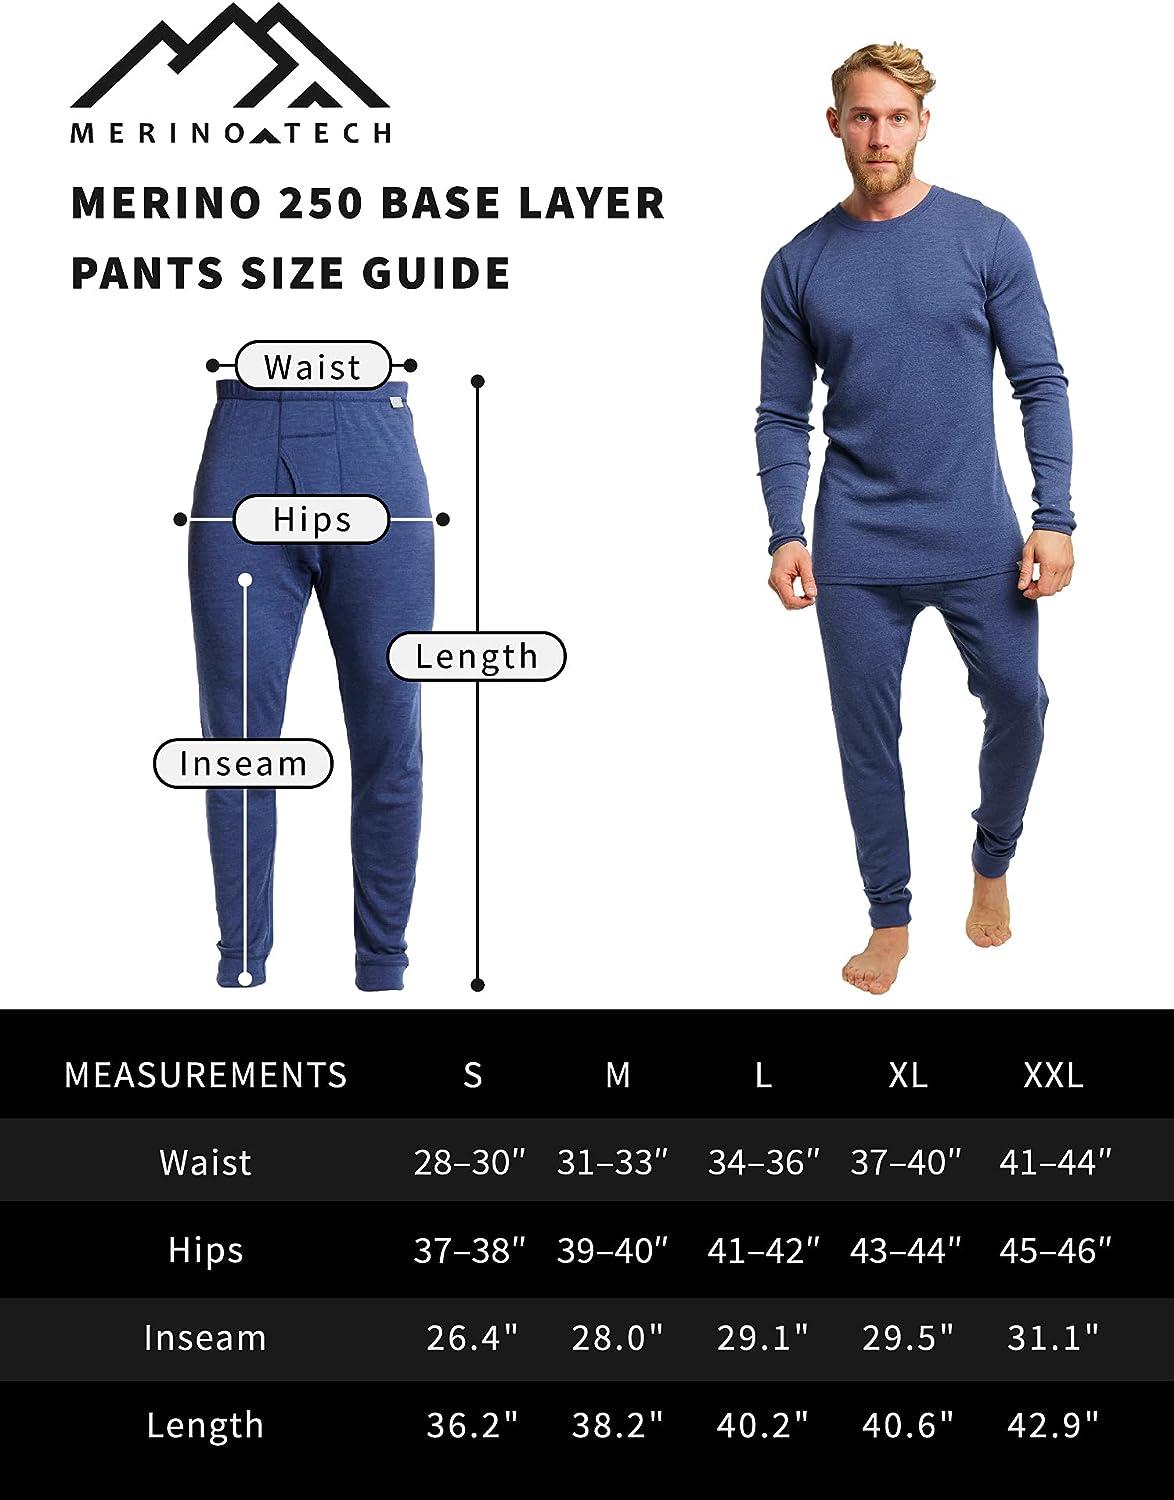 Merino.tech Merino Wool Base Layer Mens Set - Lite Merino Wool